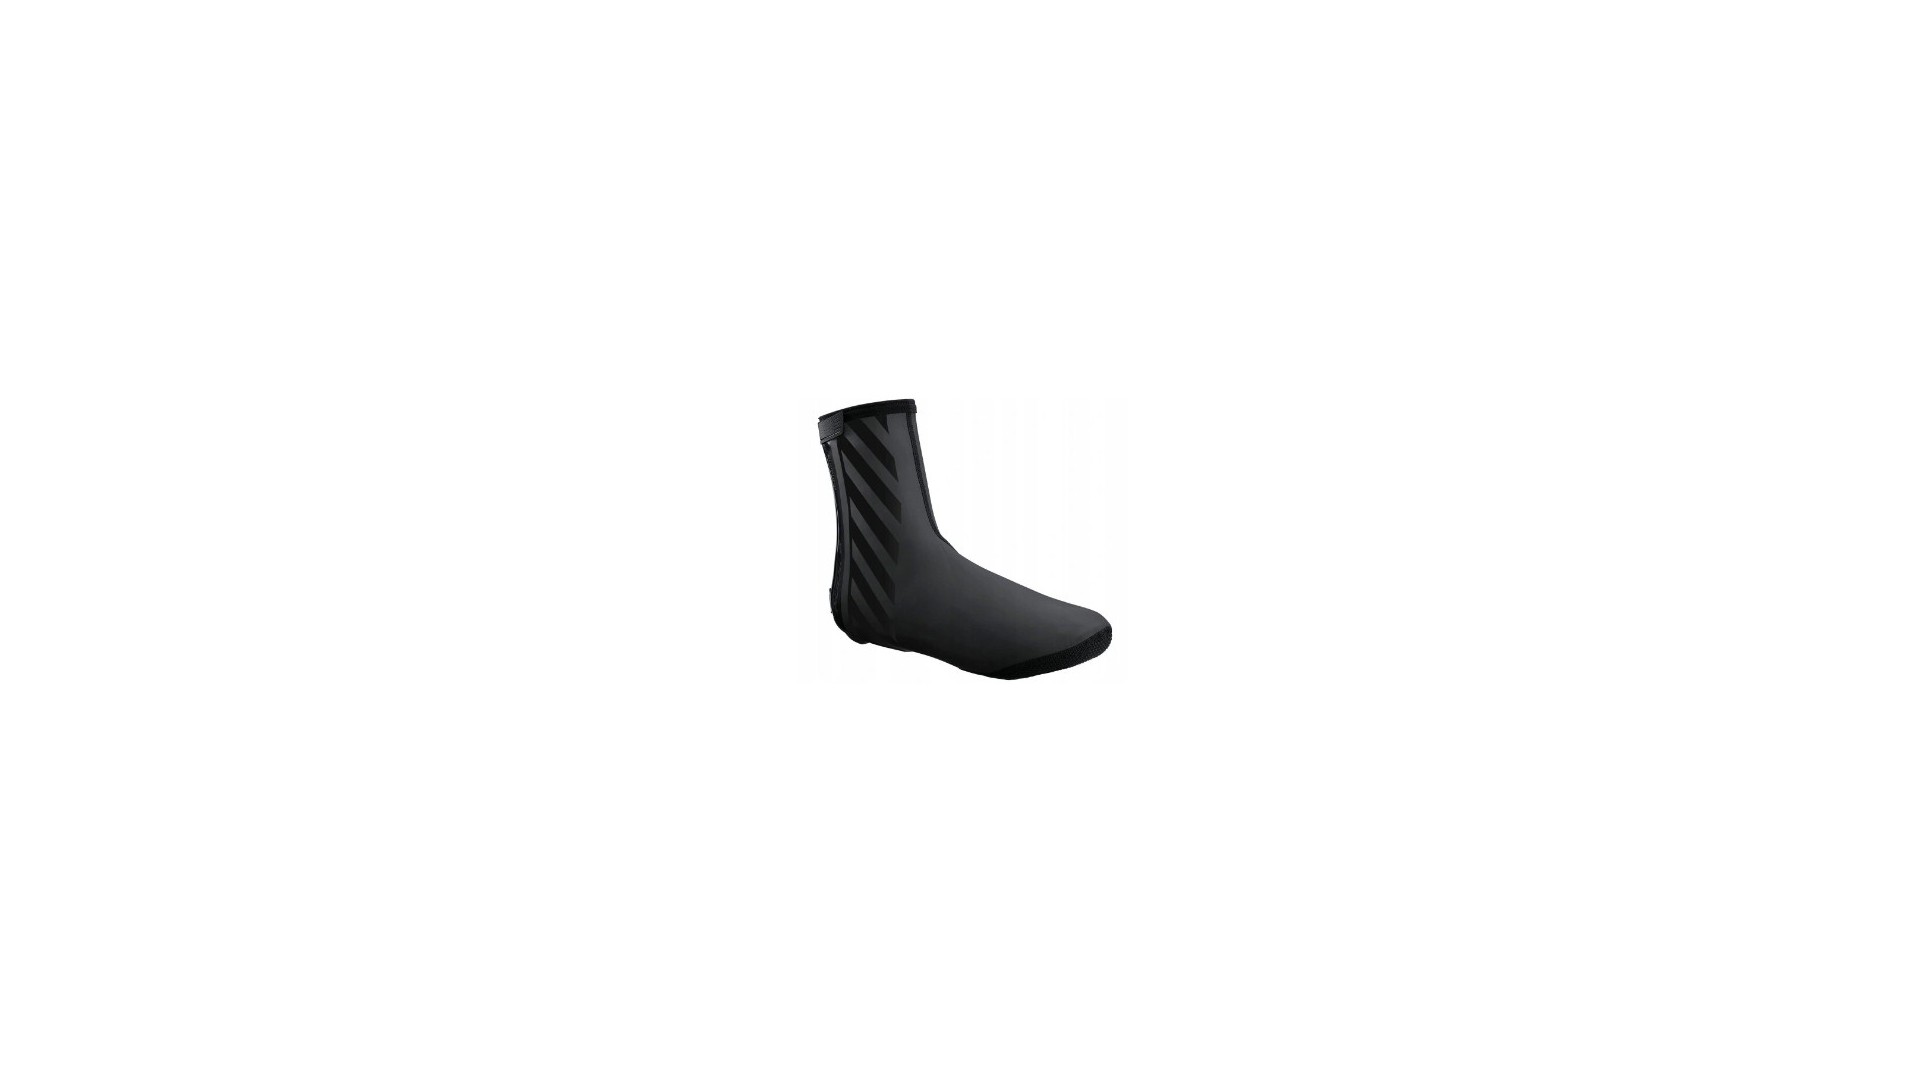 Ochraniacze na buty Shimano S1100R H2O czarne XL  (44-47) - CWFABWQS52UL5